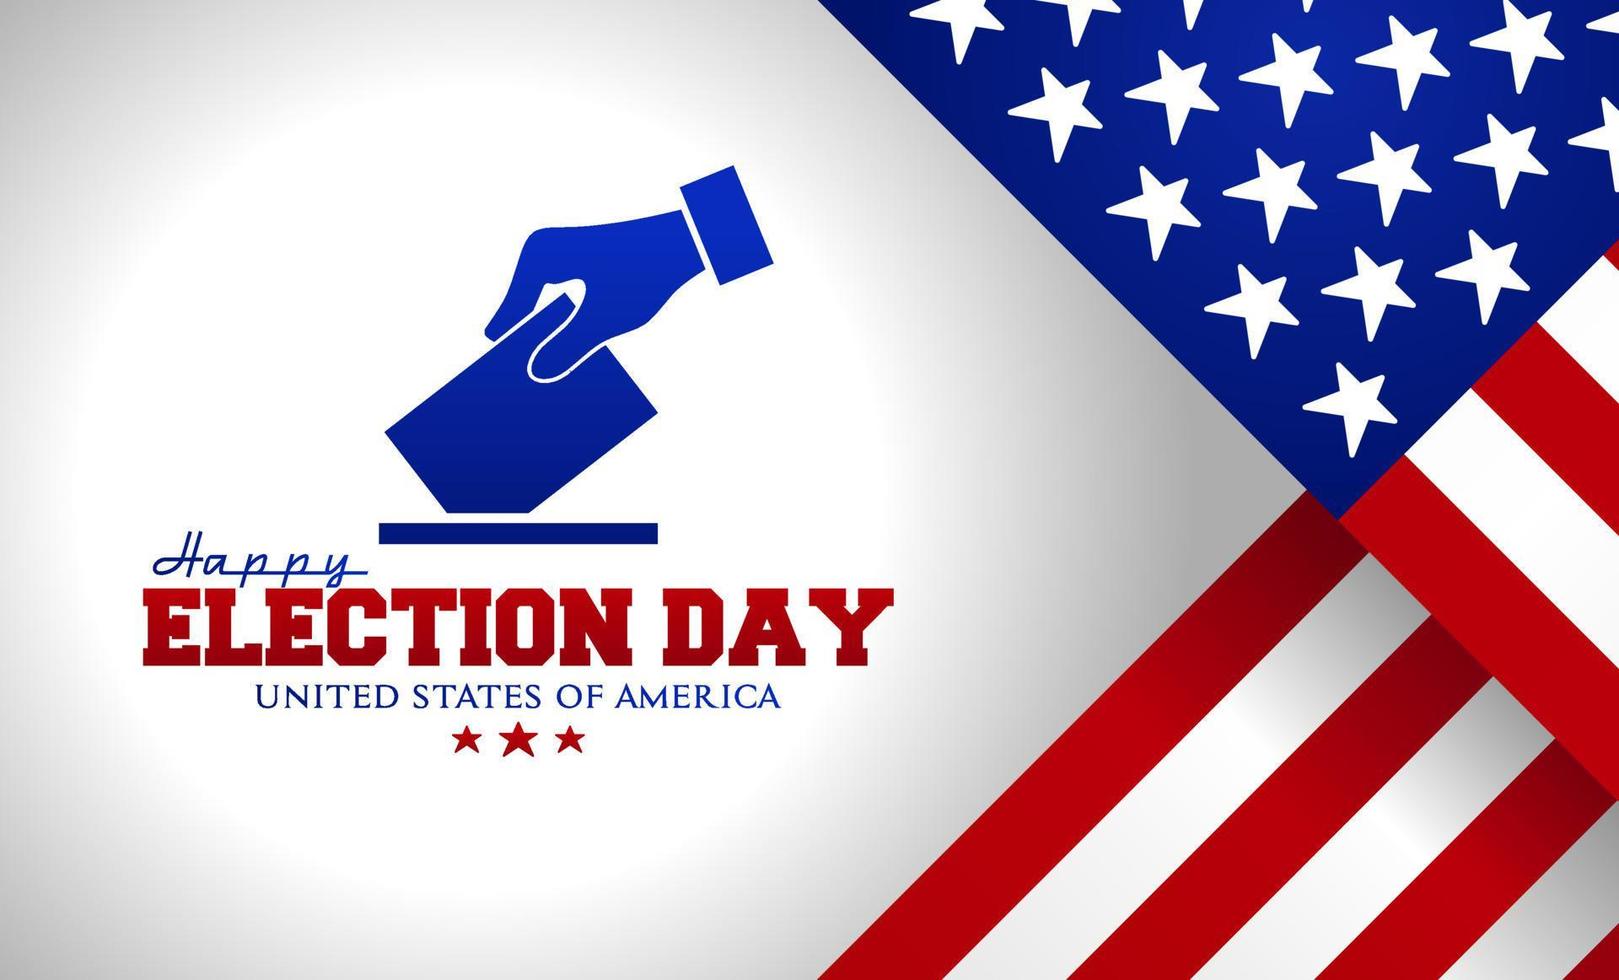 día de las elecciones estados unidos de américa. ilustración vectorial adecuado para carteles, pancartas, antecedentes y tarjetas de felicitación. vector